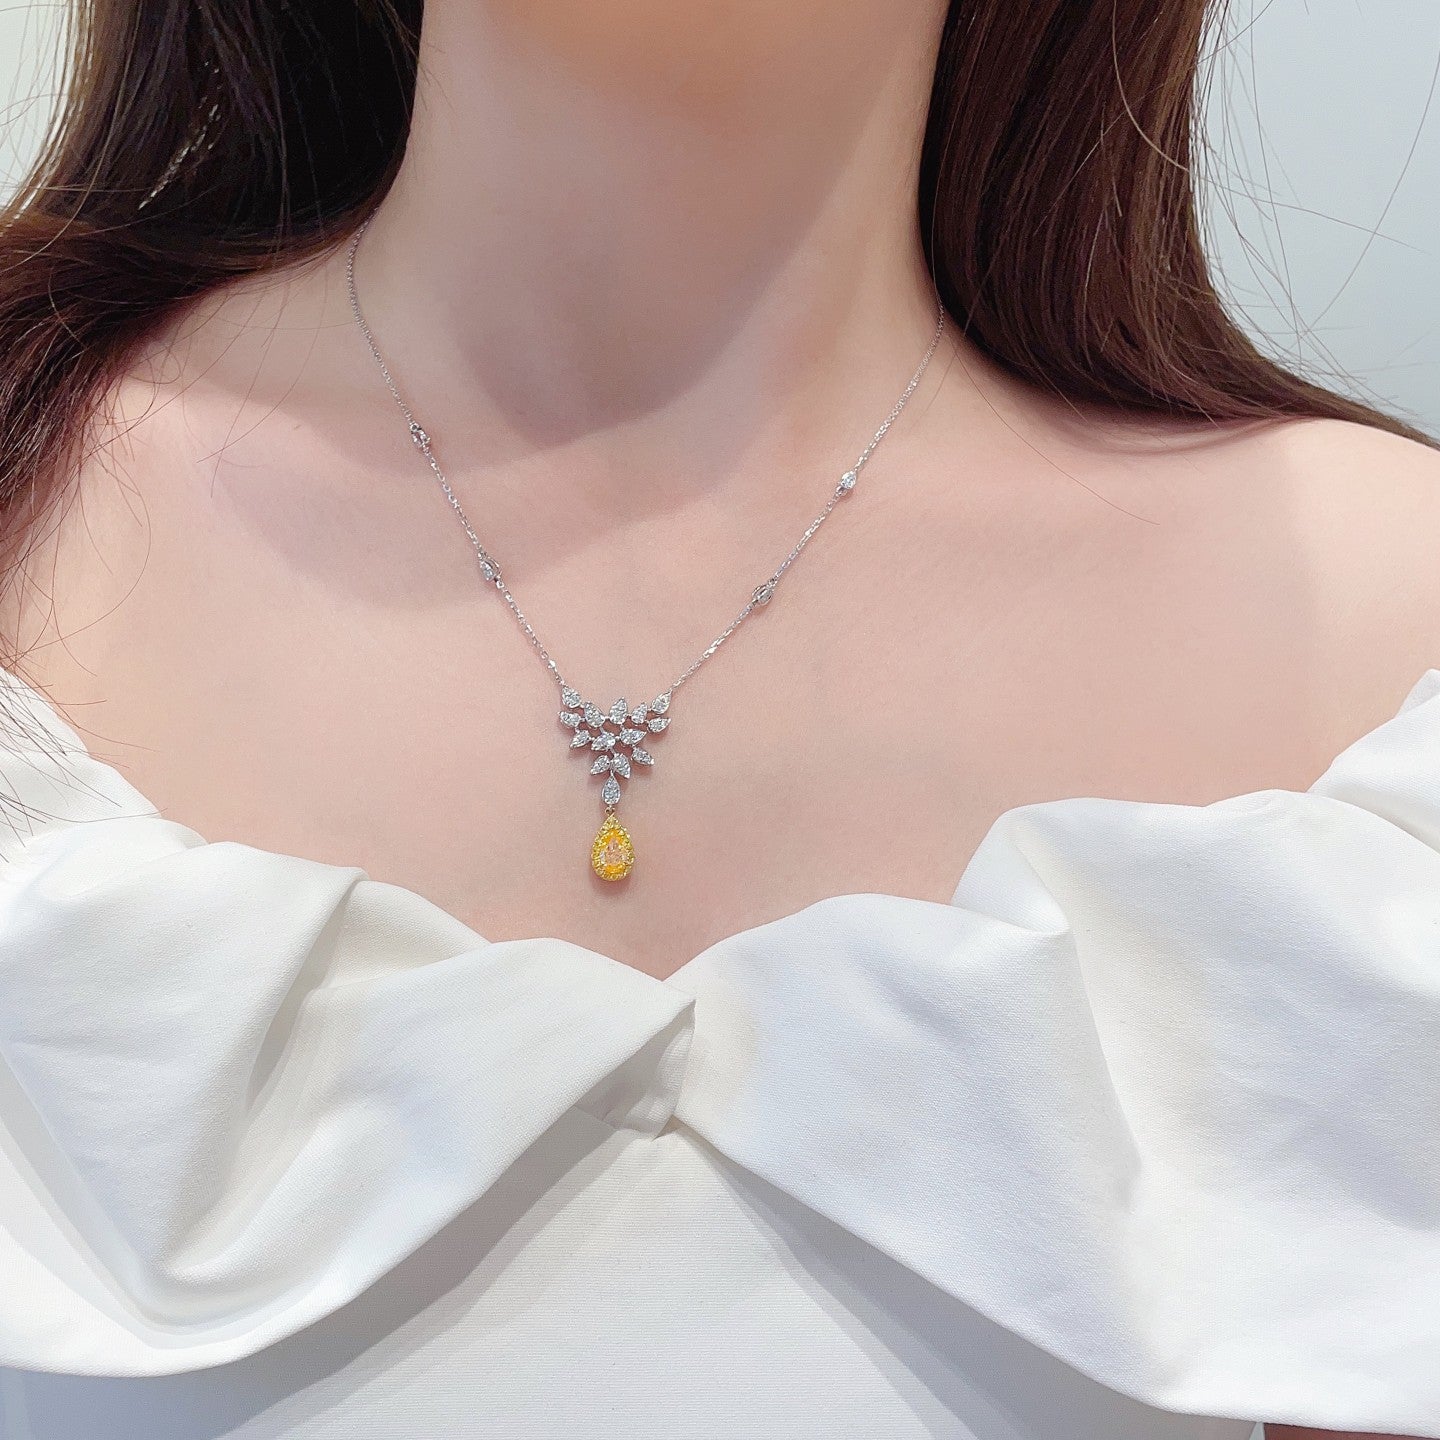  Yellow Diamond Necklace  | Poyas Jewelry